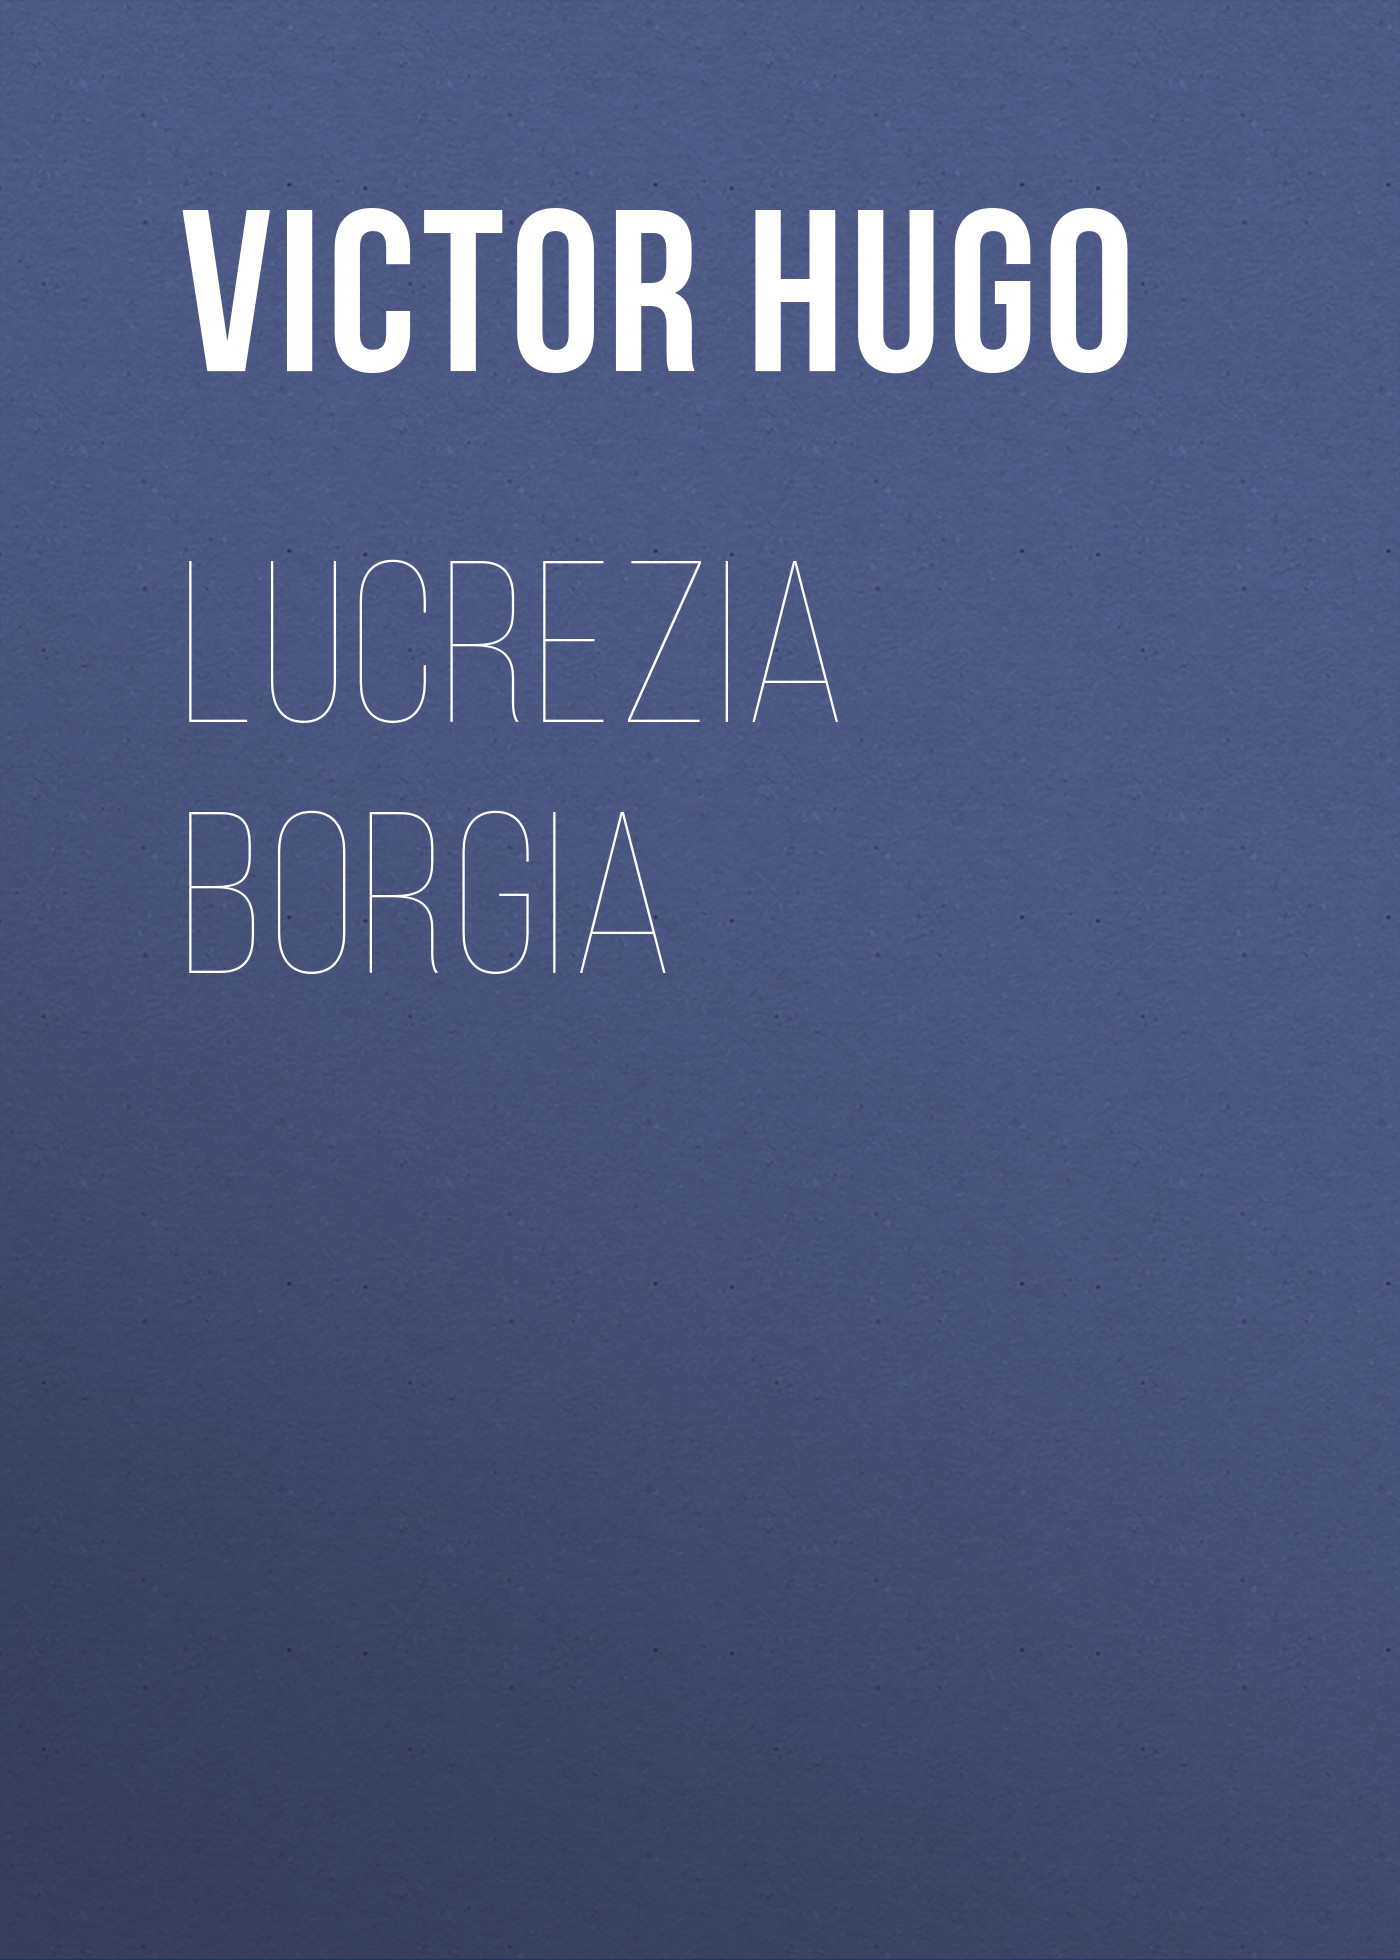 Книга Lucrezia Borgia из серии , созданная Victor Hugo, может относится к жанру Литература 19 века, Зарубежная старинная литература, Зарубежная классика. Стоимость электронной книги Lucrezia Borgia с идентификатором 25229748 составляет 0 руб.